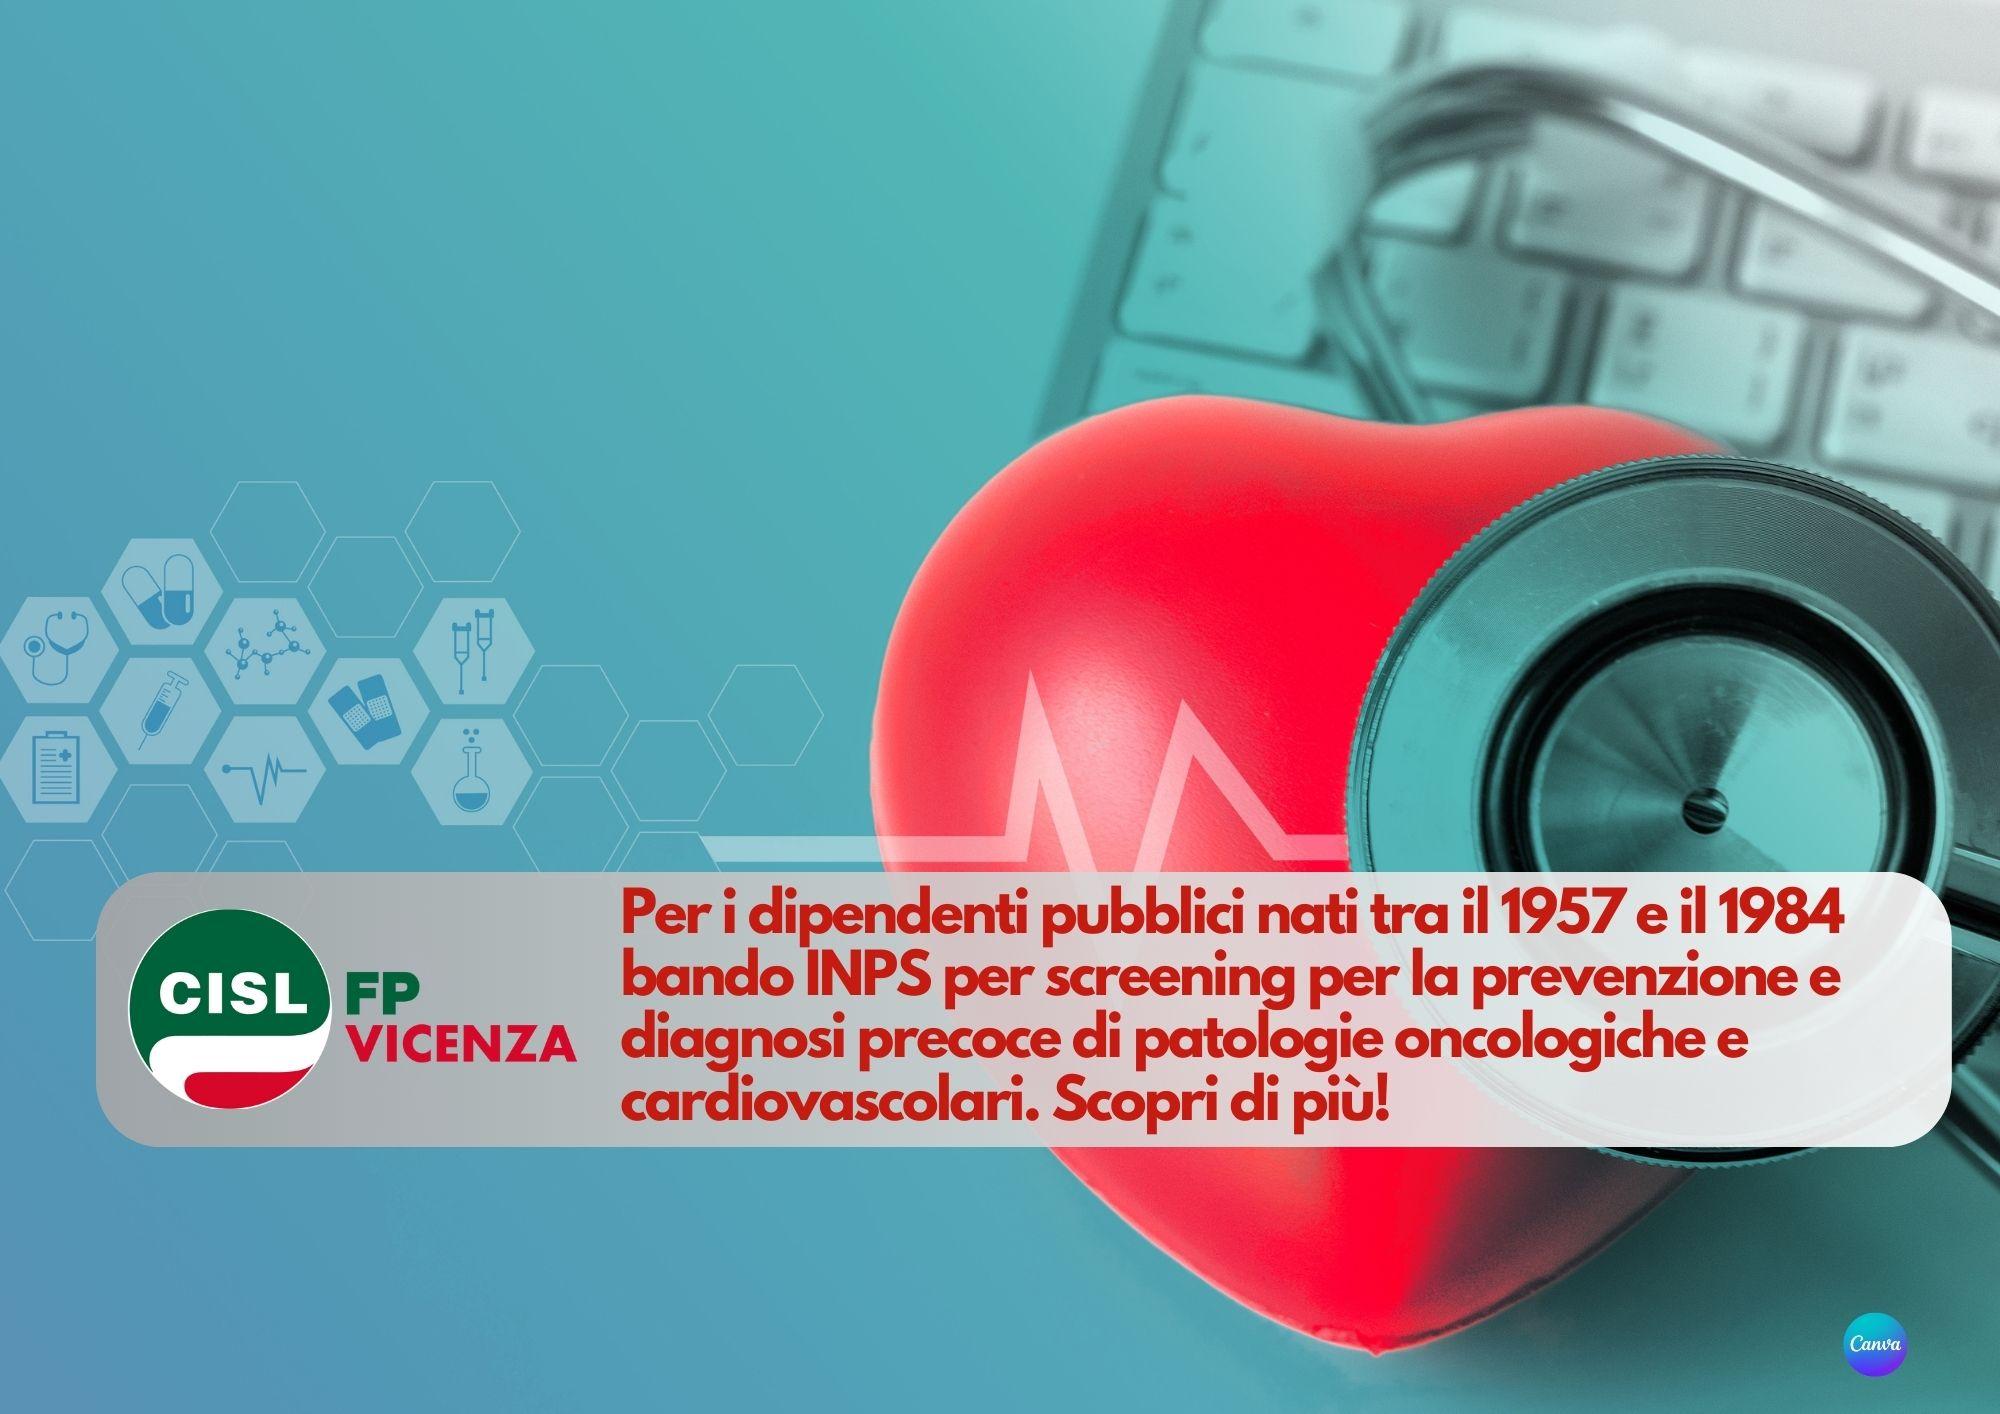 CISL FP Vicenza. Pubblico impiego: bando INPS screening patologie oncologiche e cardiovascolari